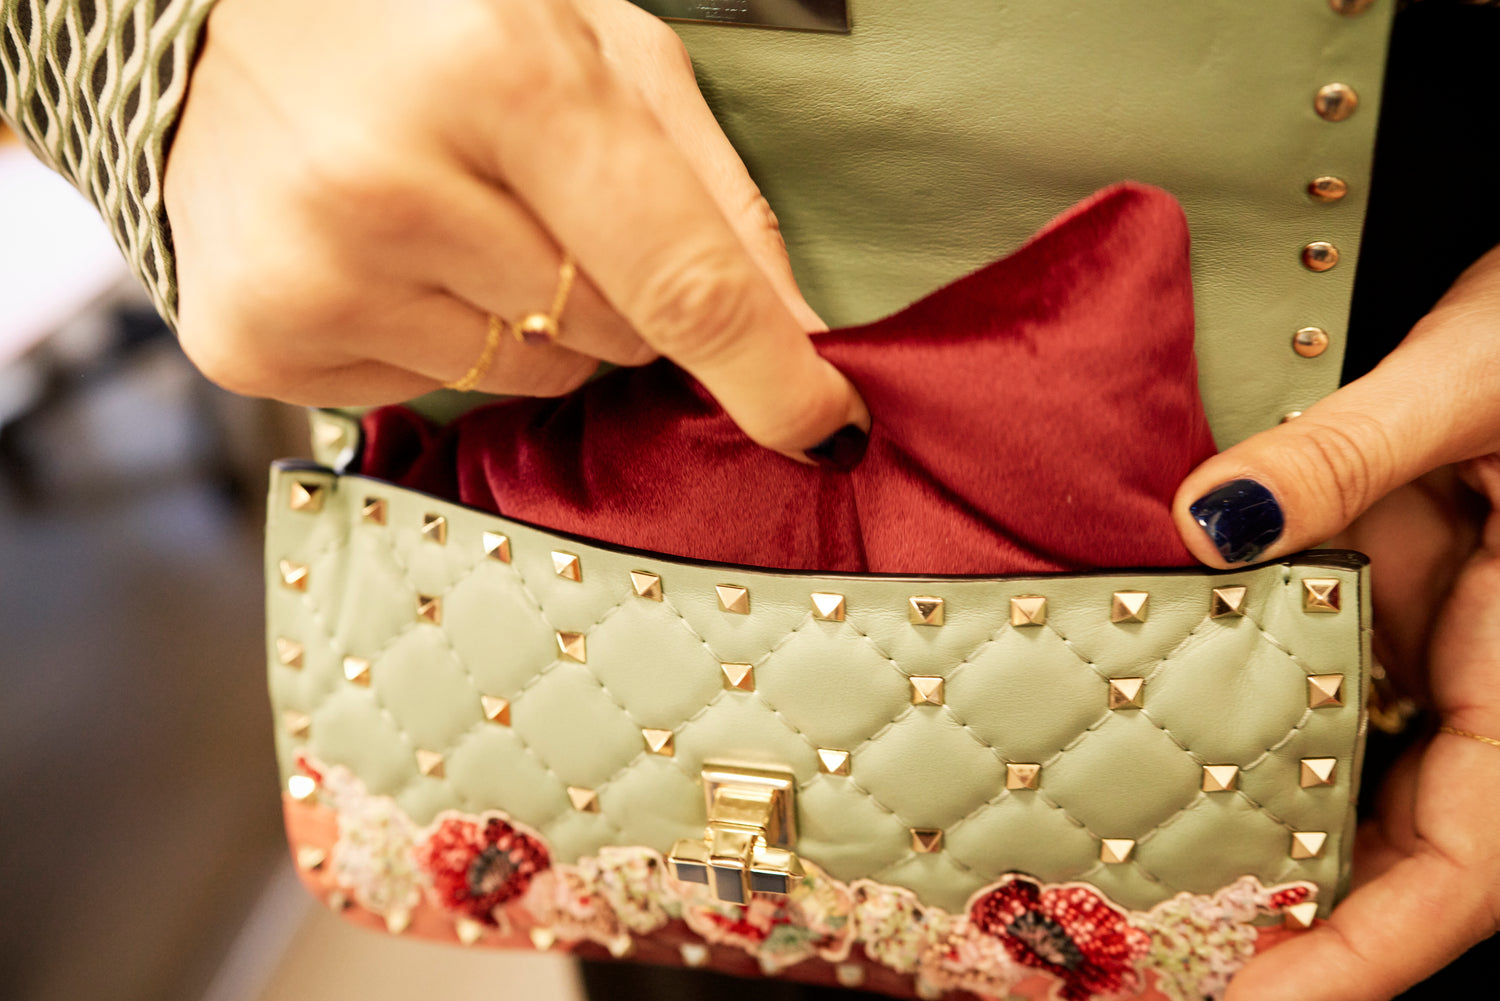 Handbag Shaper pillows Speedy Chanel GG Gucci Mulberry